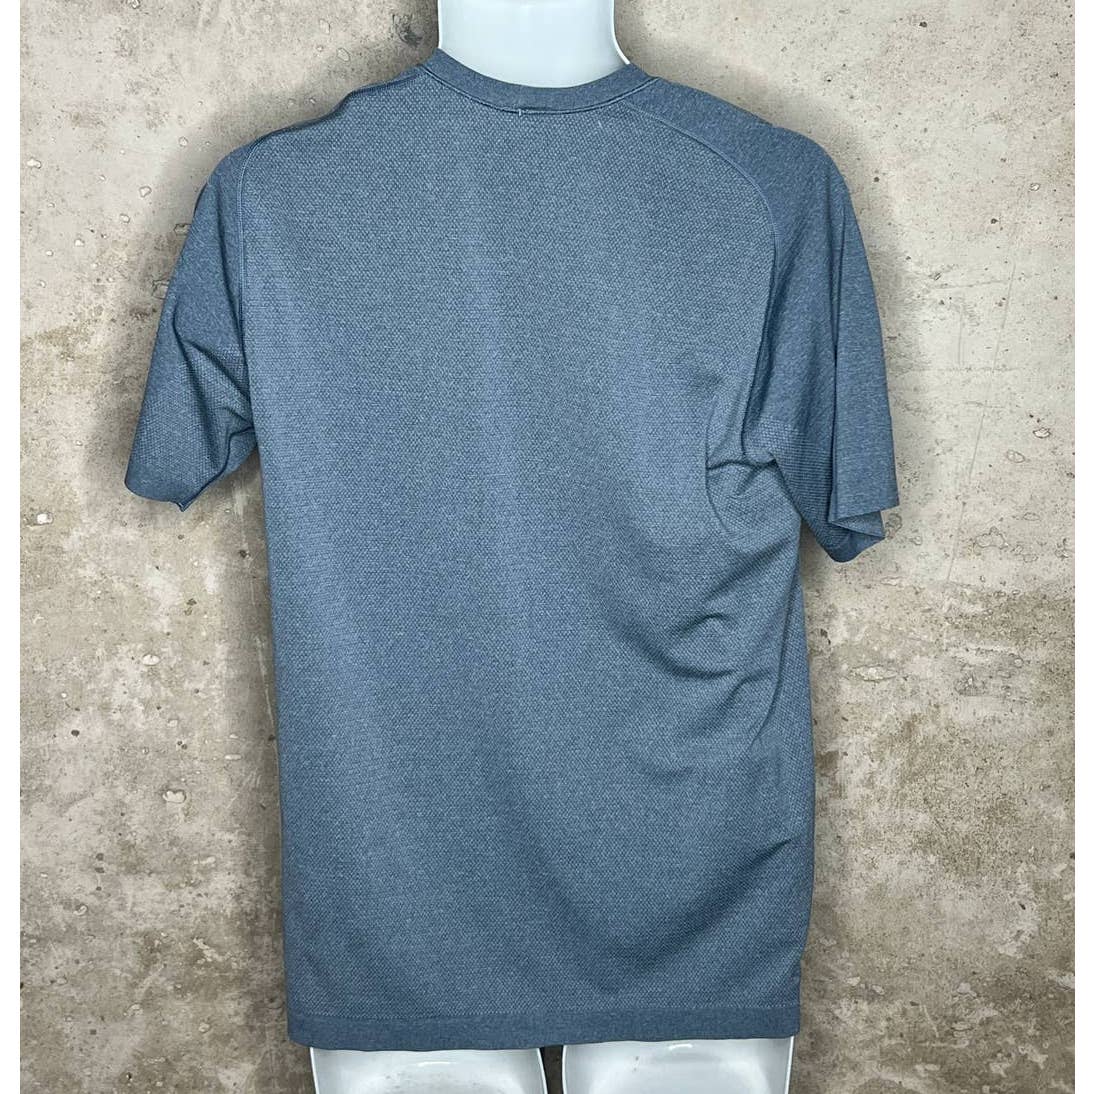 Lululemon Men’s Blue Shirt Sz. Medium